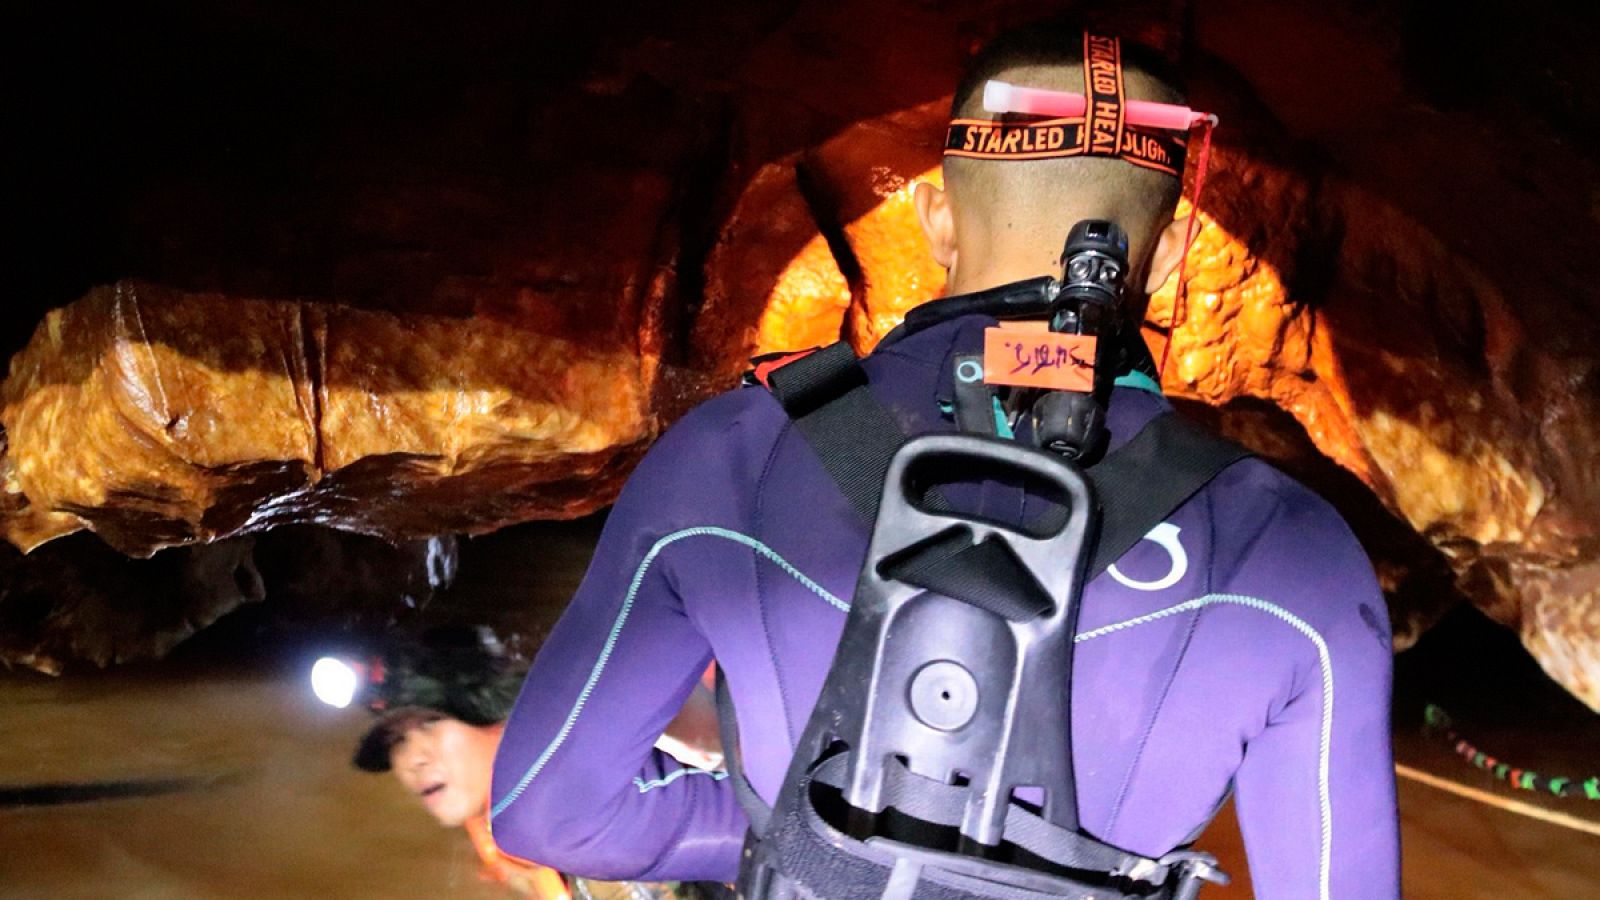 Comienza el rescate de los doce menores y el monitor atrapados en una cueva en Tailandia